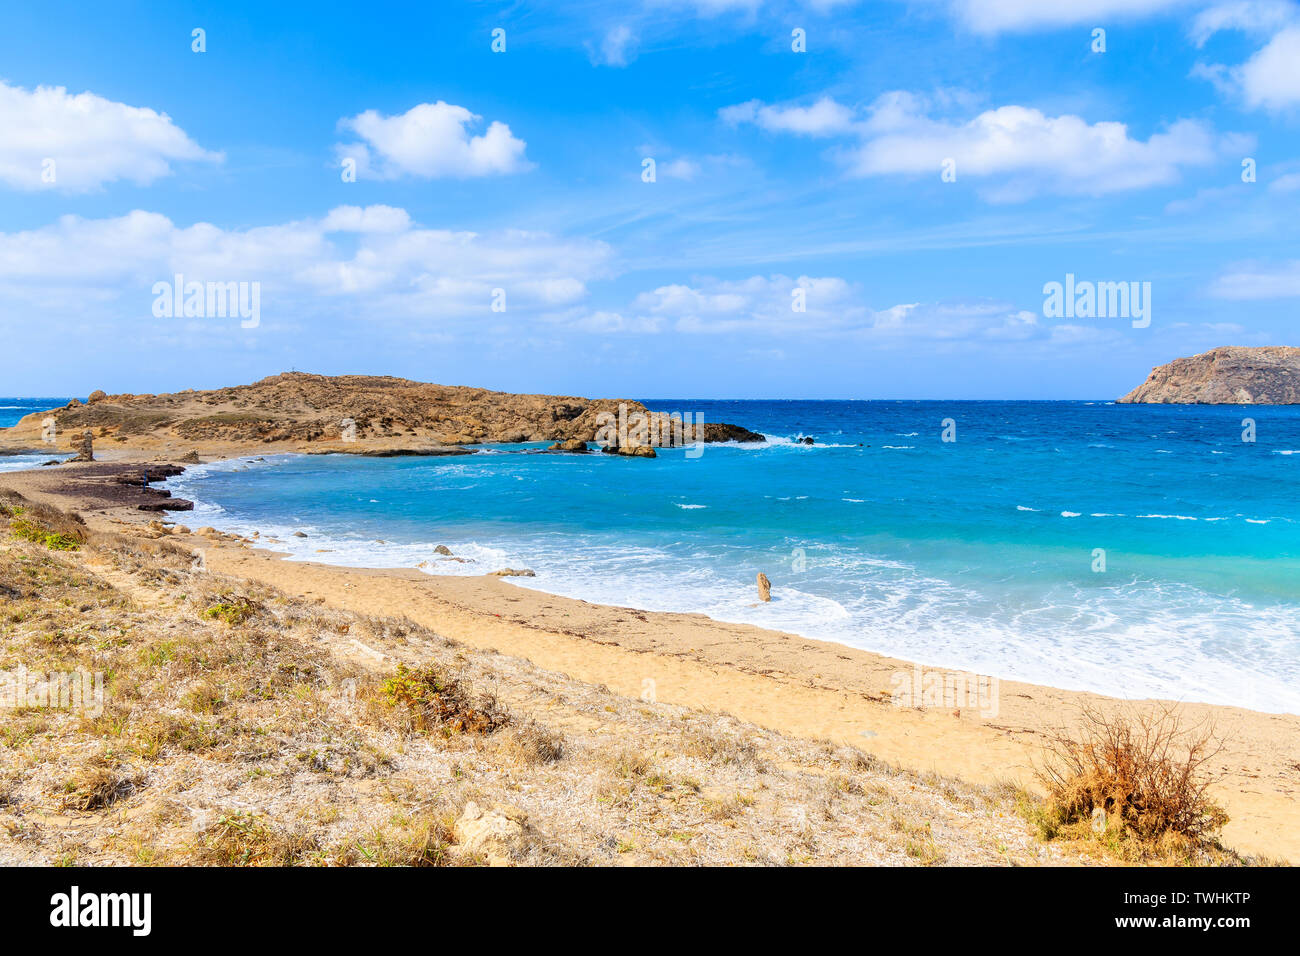 Vue de la plage de Lefkos et vagues de la mer, l'île de Karpathos, Grèce Banque D'Images